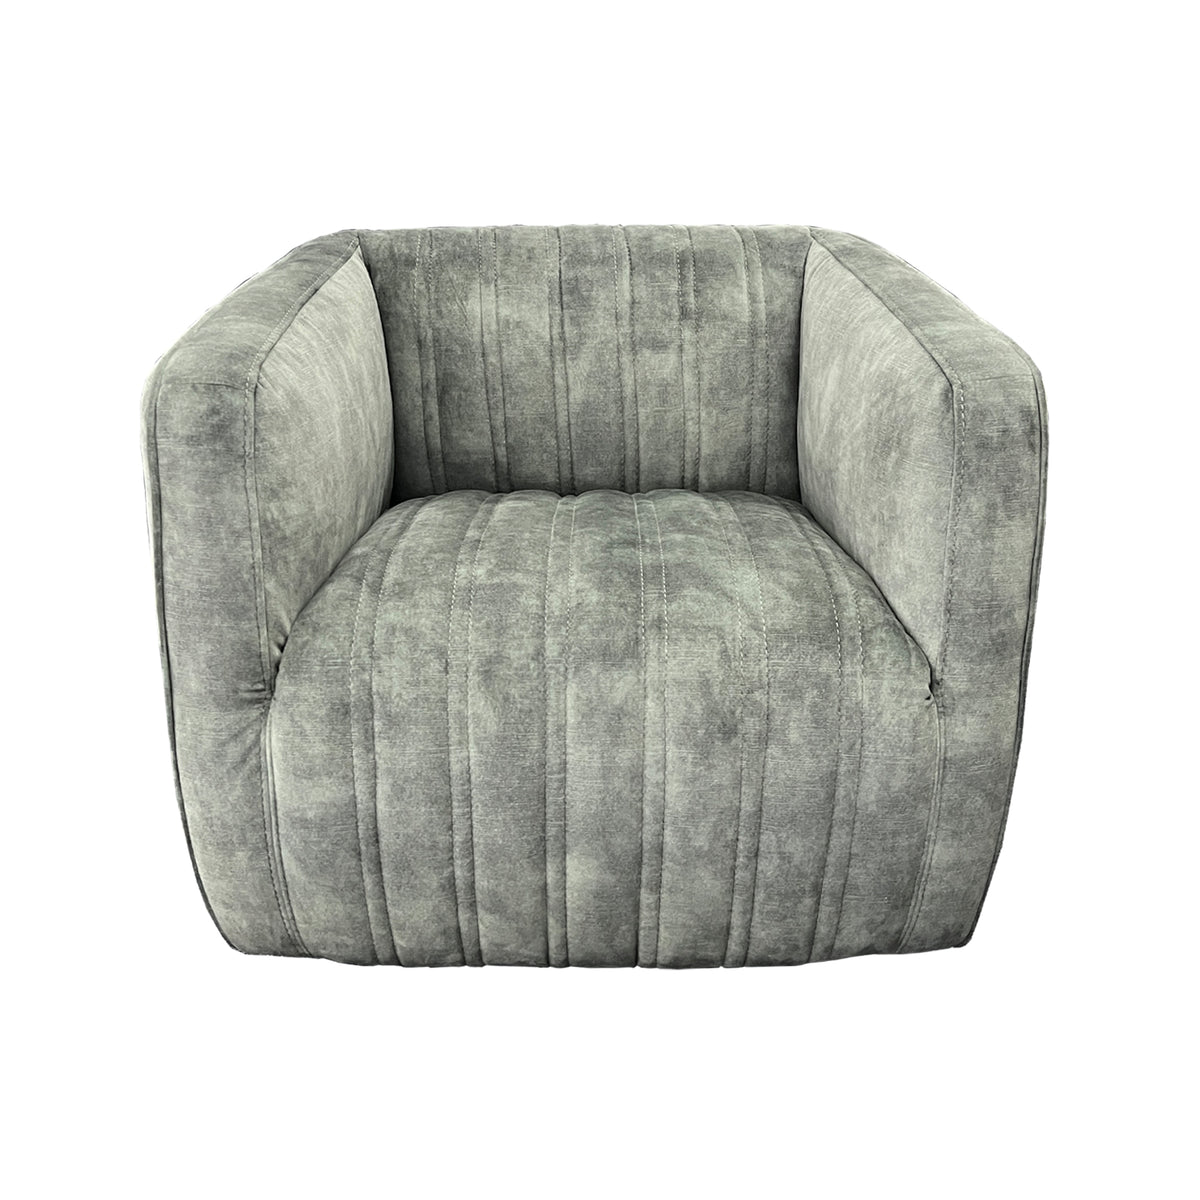 Marvy Fabric Swivel Chair - Urban Sofa - Forest Green Velvet